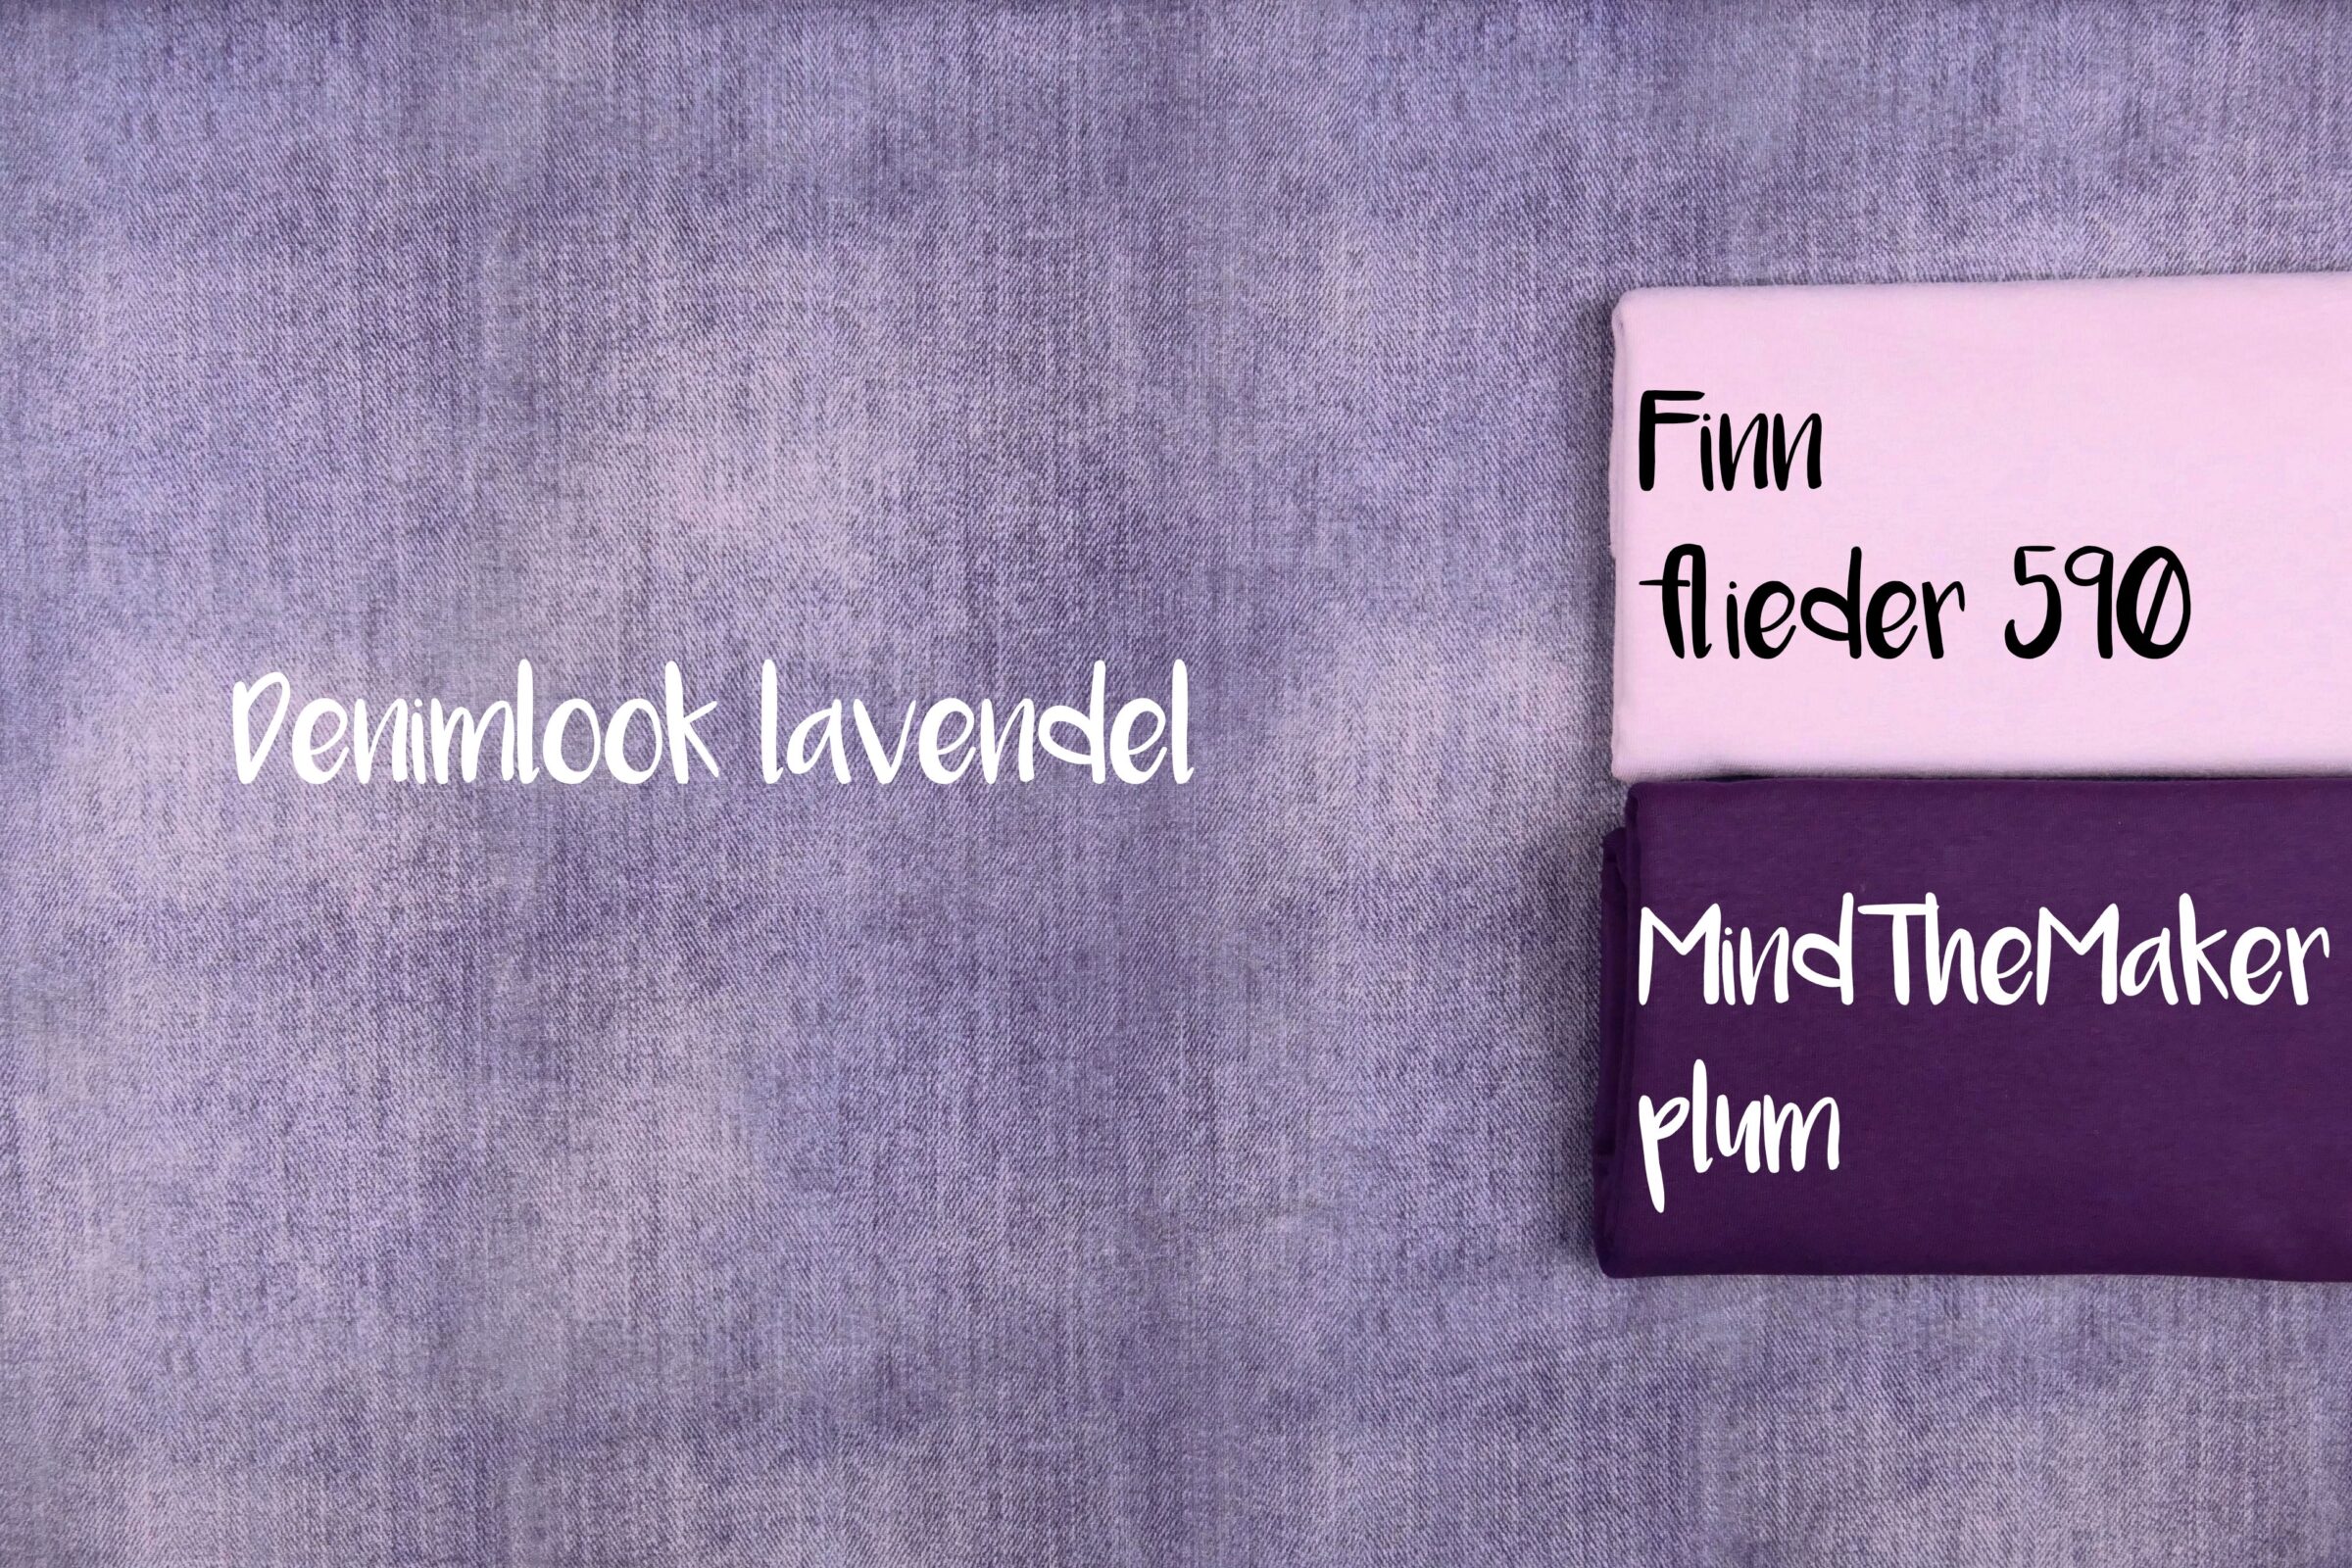 Denimlook Lavendel Kombination Finn Flieder 590 + MTM Plum bearbeitet und beschriftet